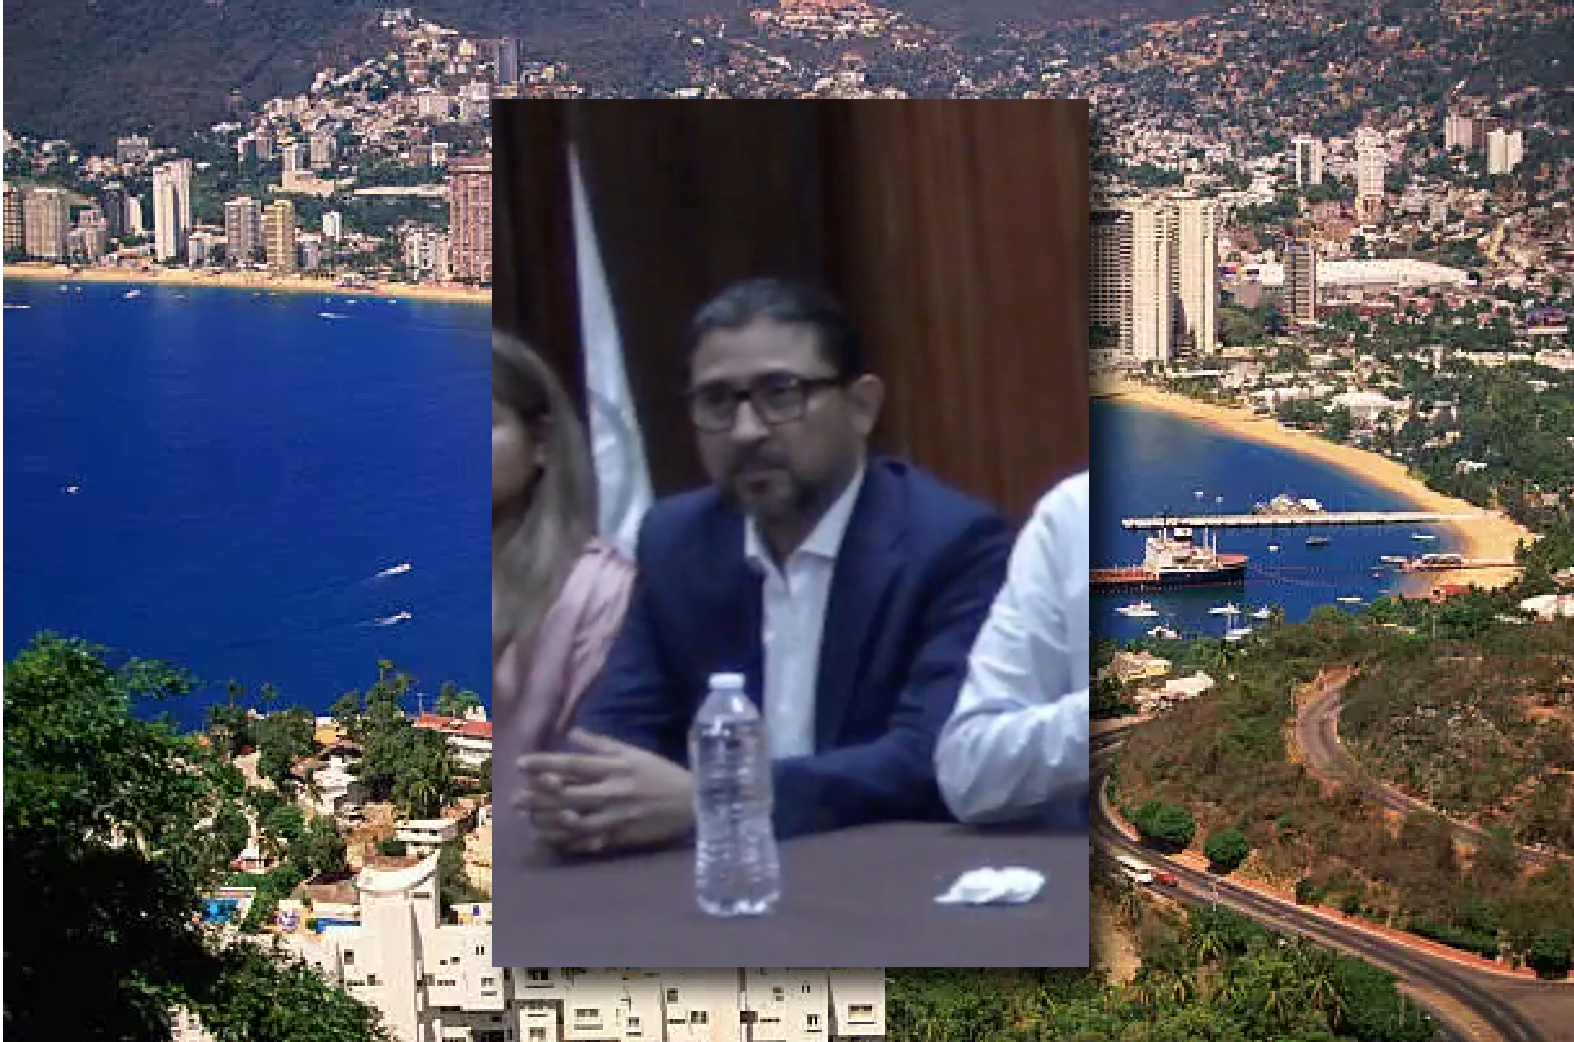 Atención, proximidad y prevención, pilares básicos de la Seguridad en Acapulco: Vázquez Rodríguez.